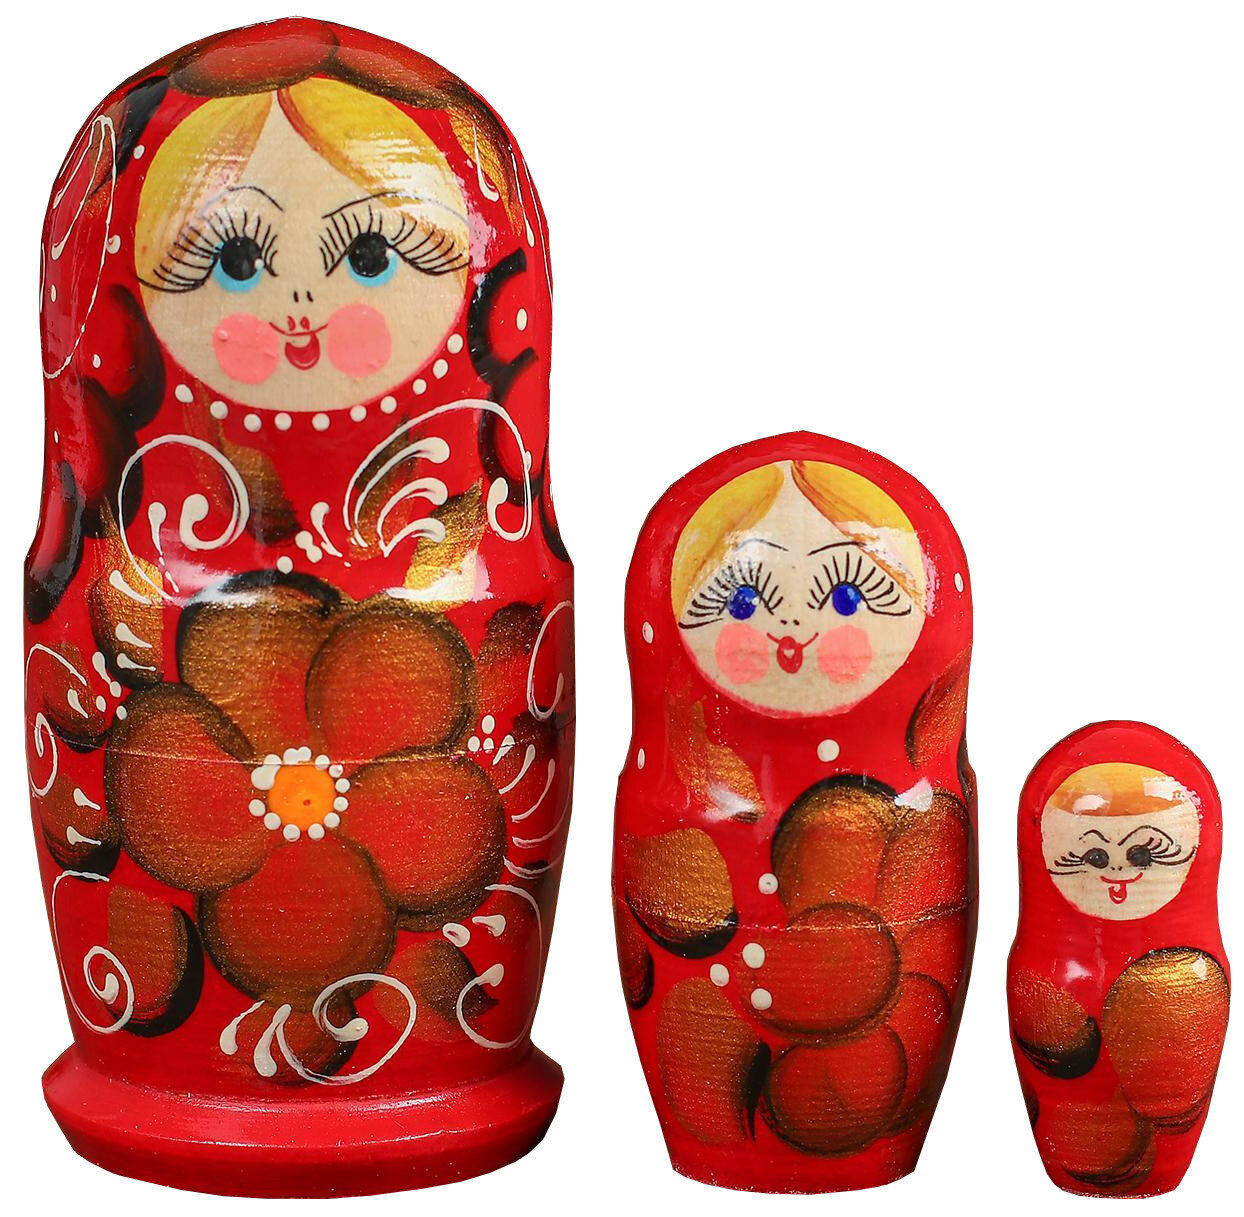 Матрёшка 3 в 1 расписная, развивающая русская народная игрушка для детей, 3 деревянных фигурки